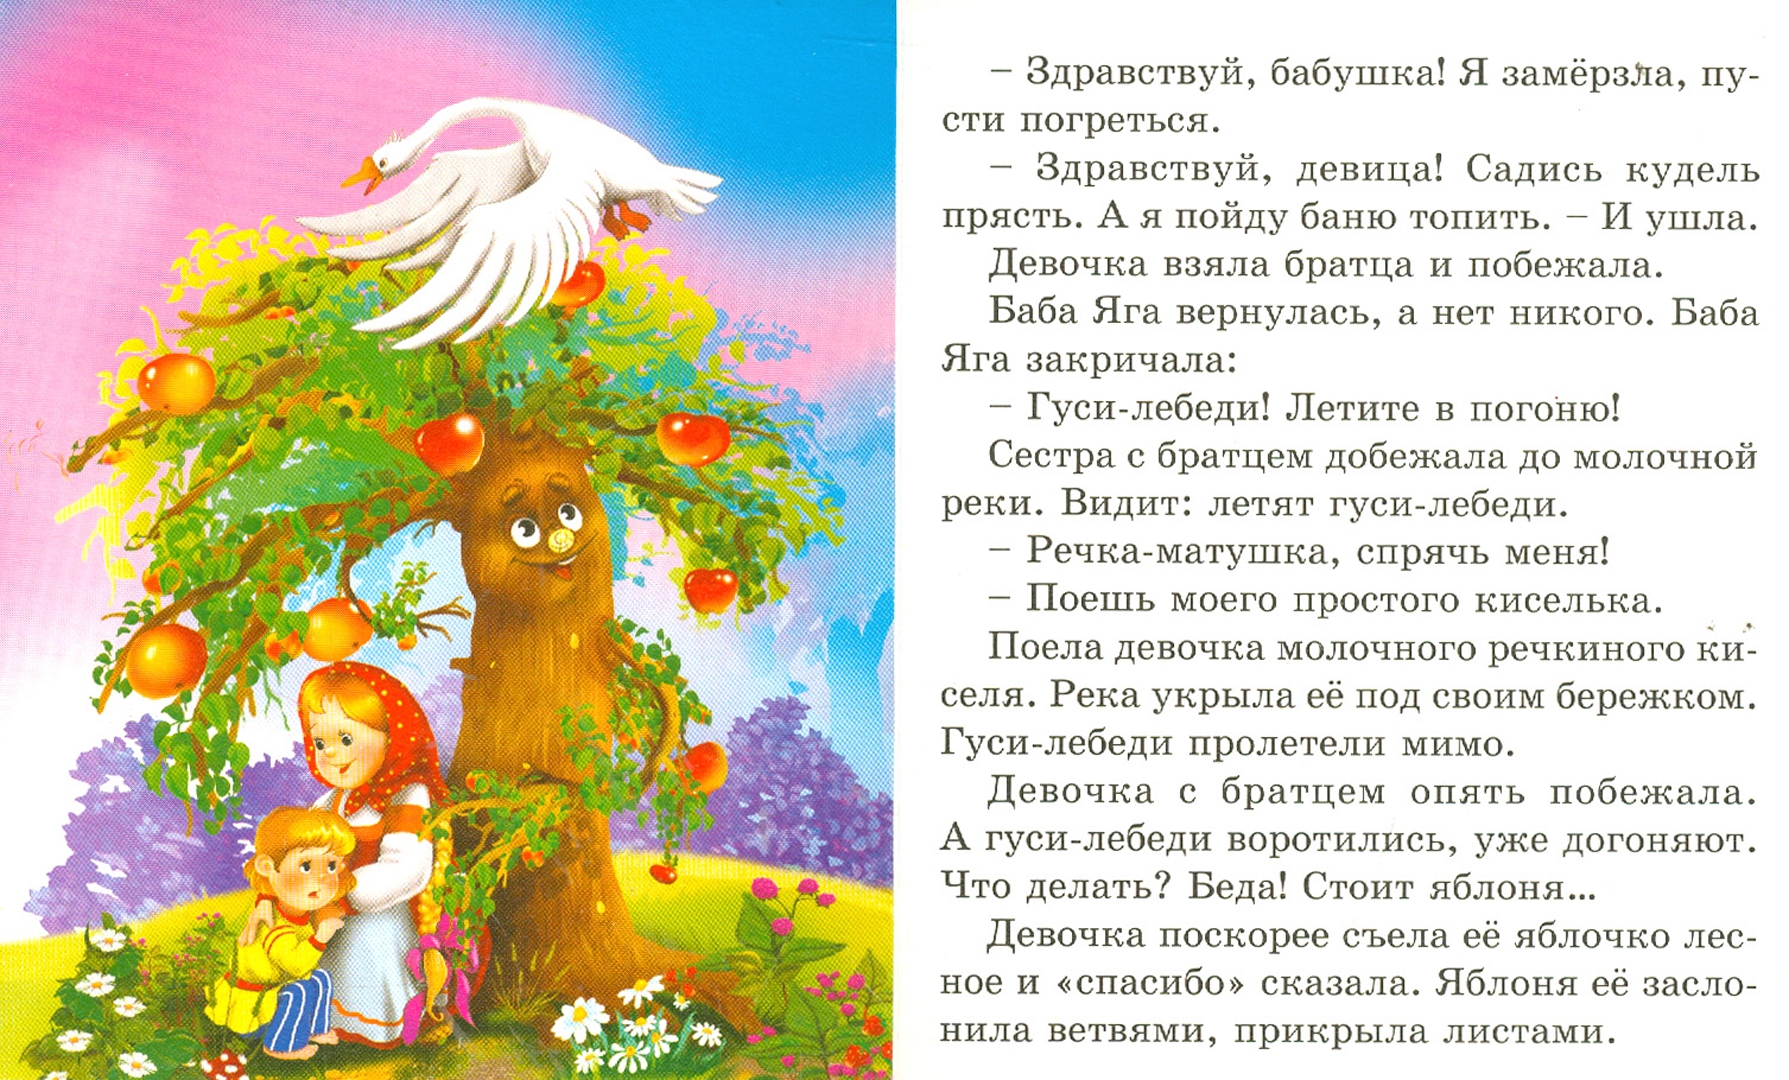 Гуси-лебеди. русская народная сказка